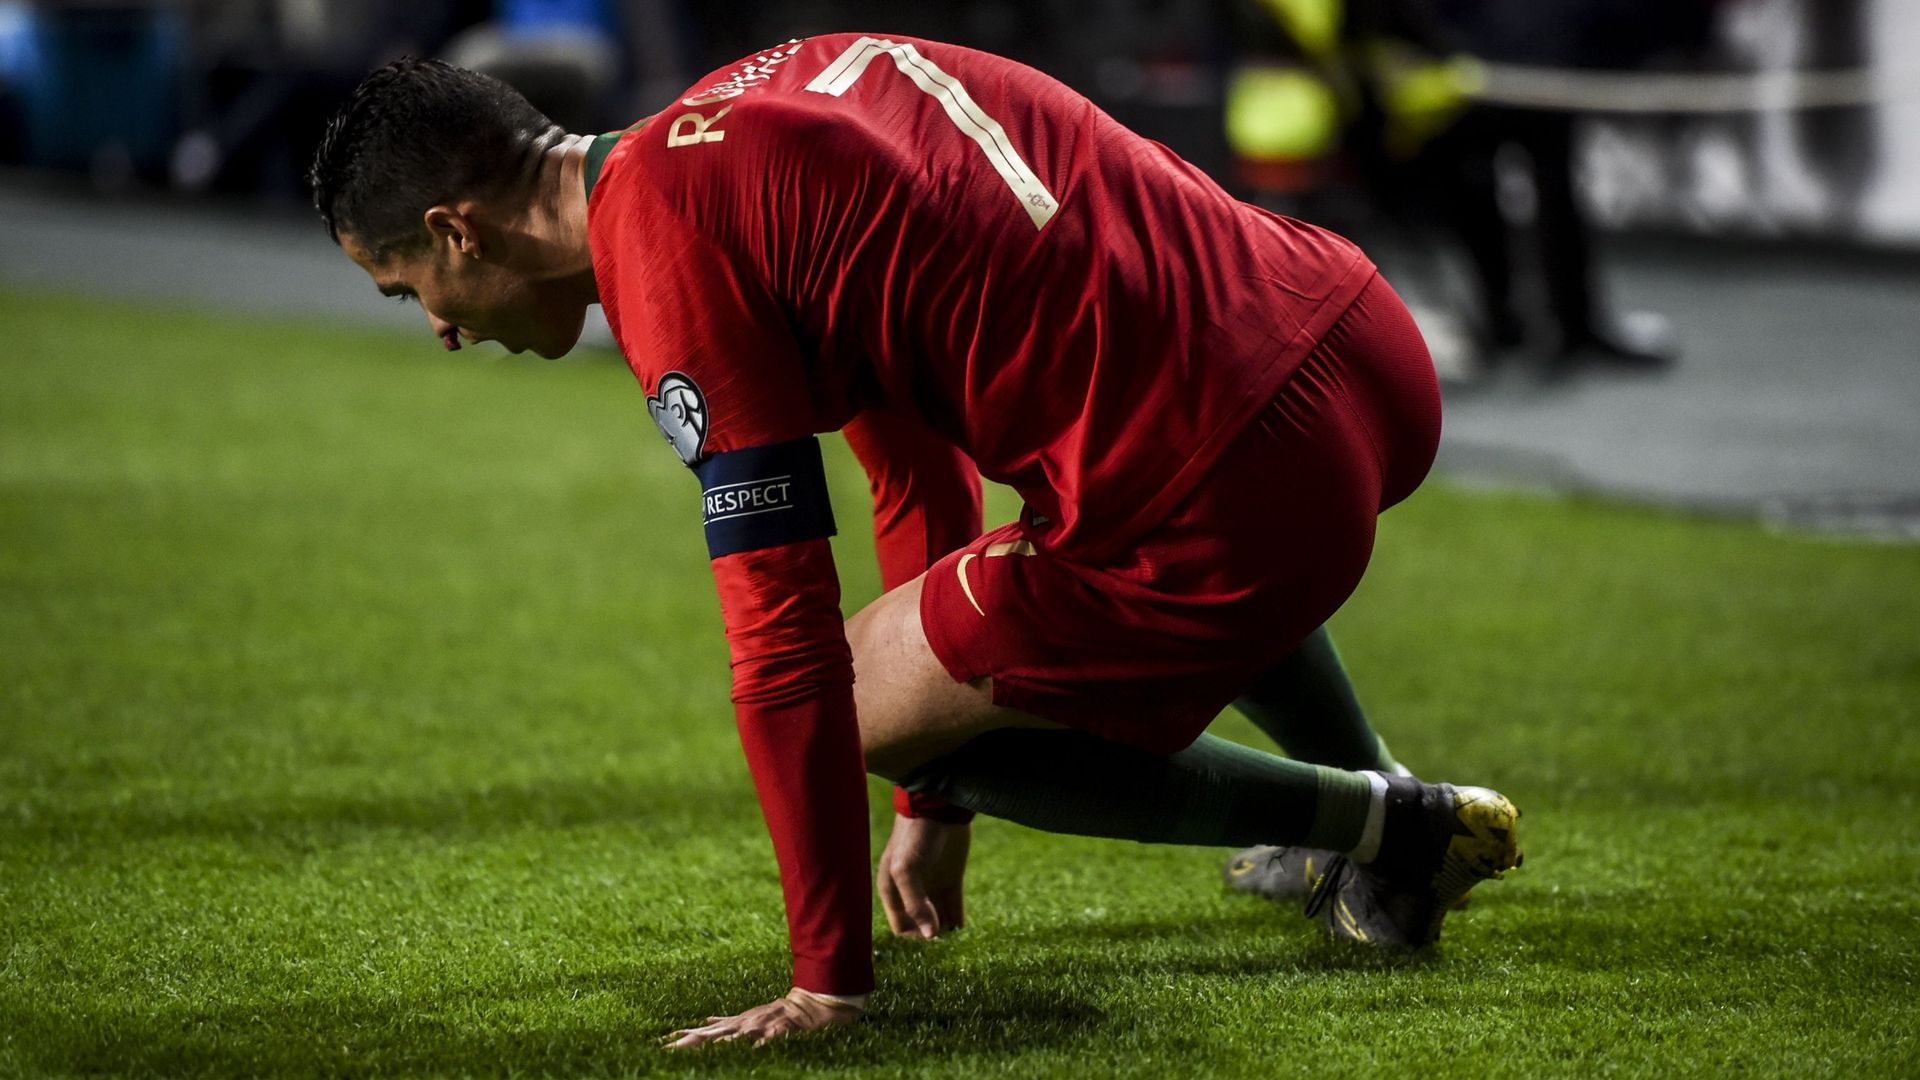 Le Portugal partage contre la Serbie, Cristiano Ronaldo sorti sur blessure